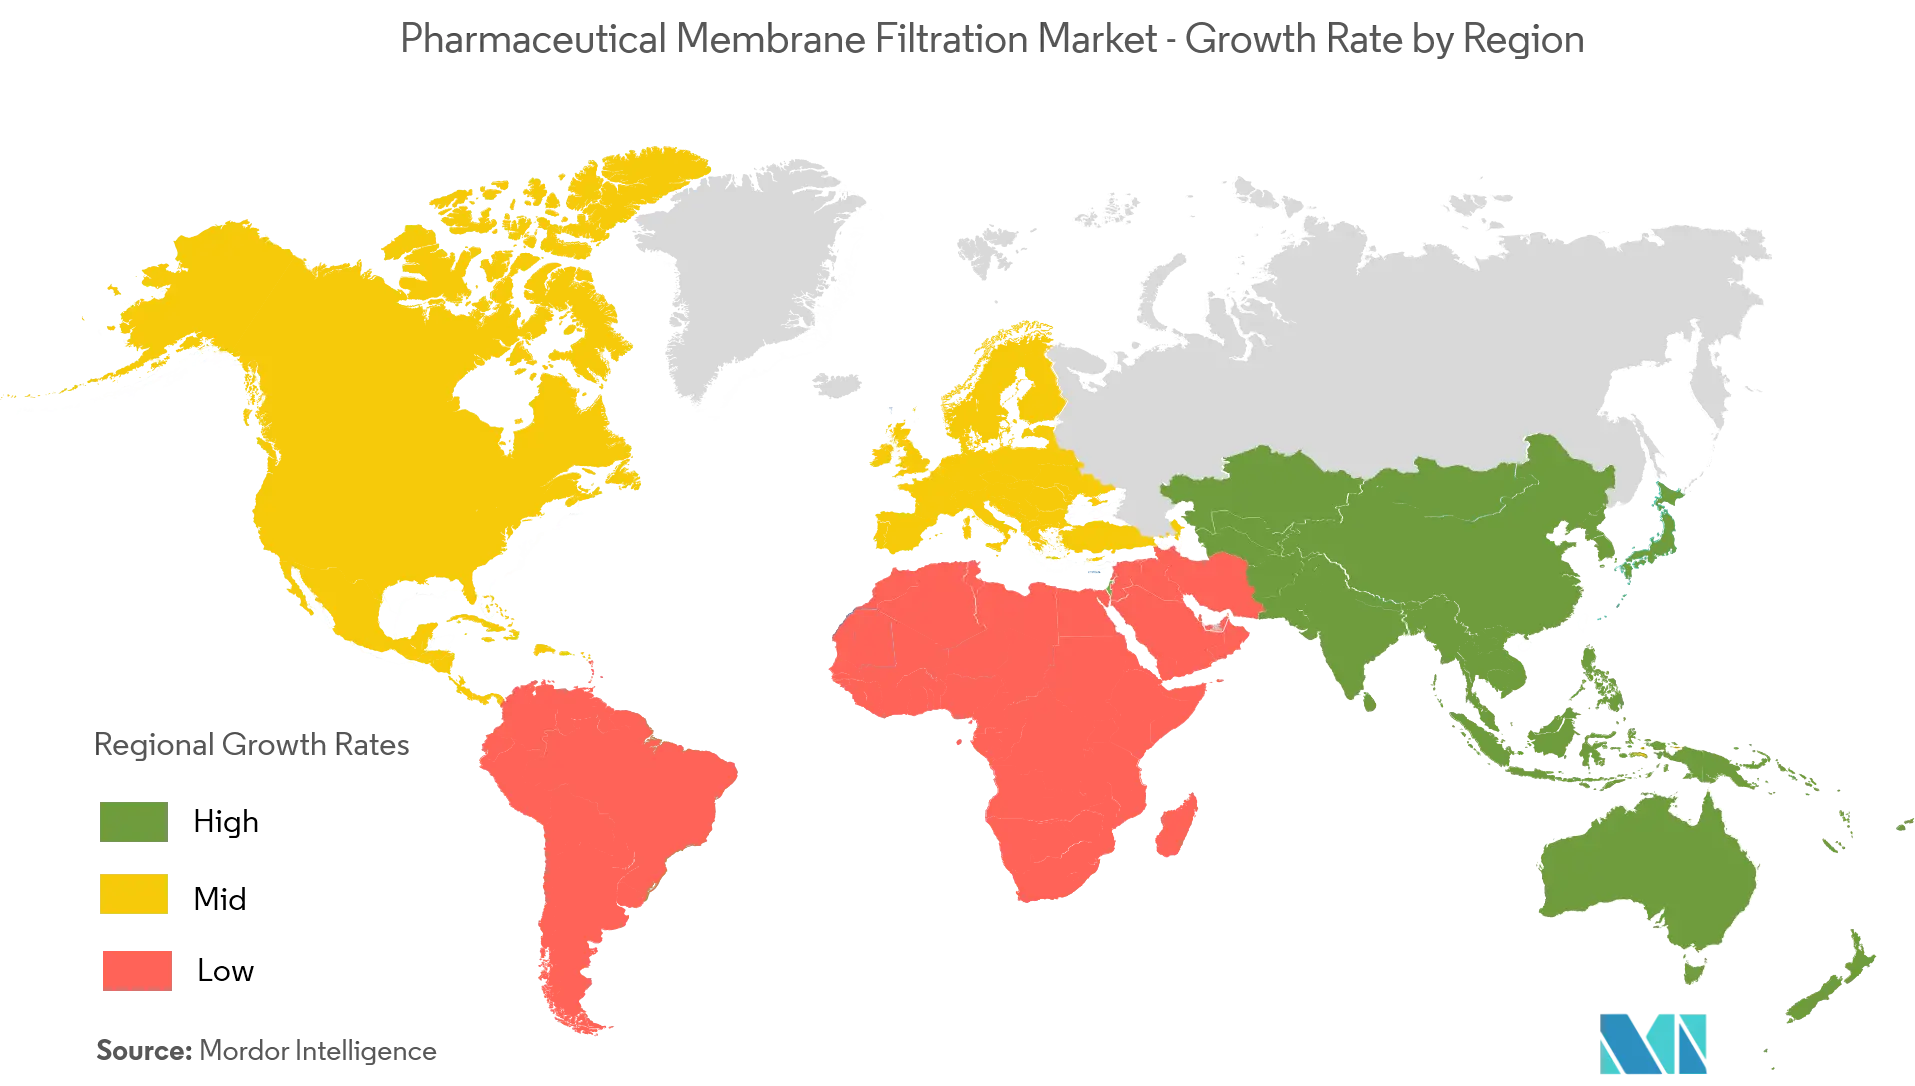 Pharmazeutischer Membranfiltrationsmarkt – Wachstumsrate nach Regionen